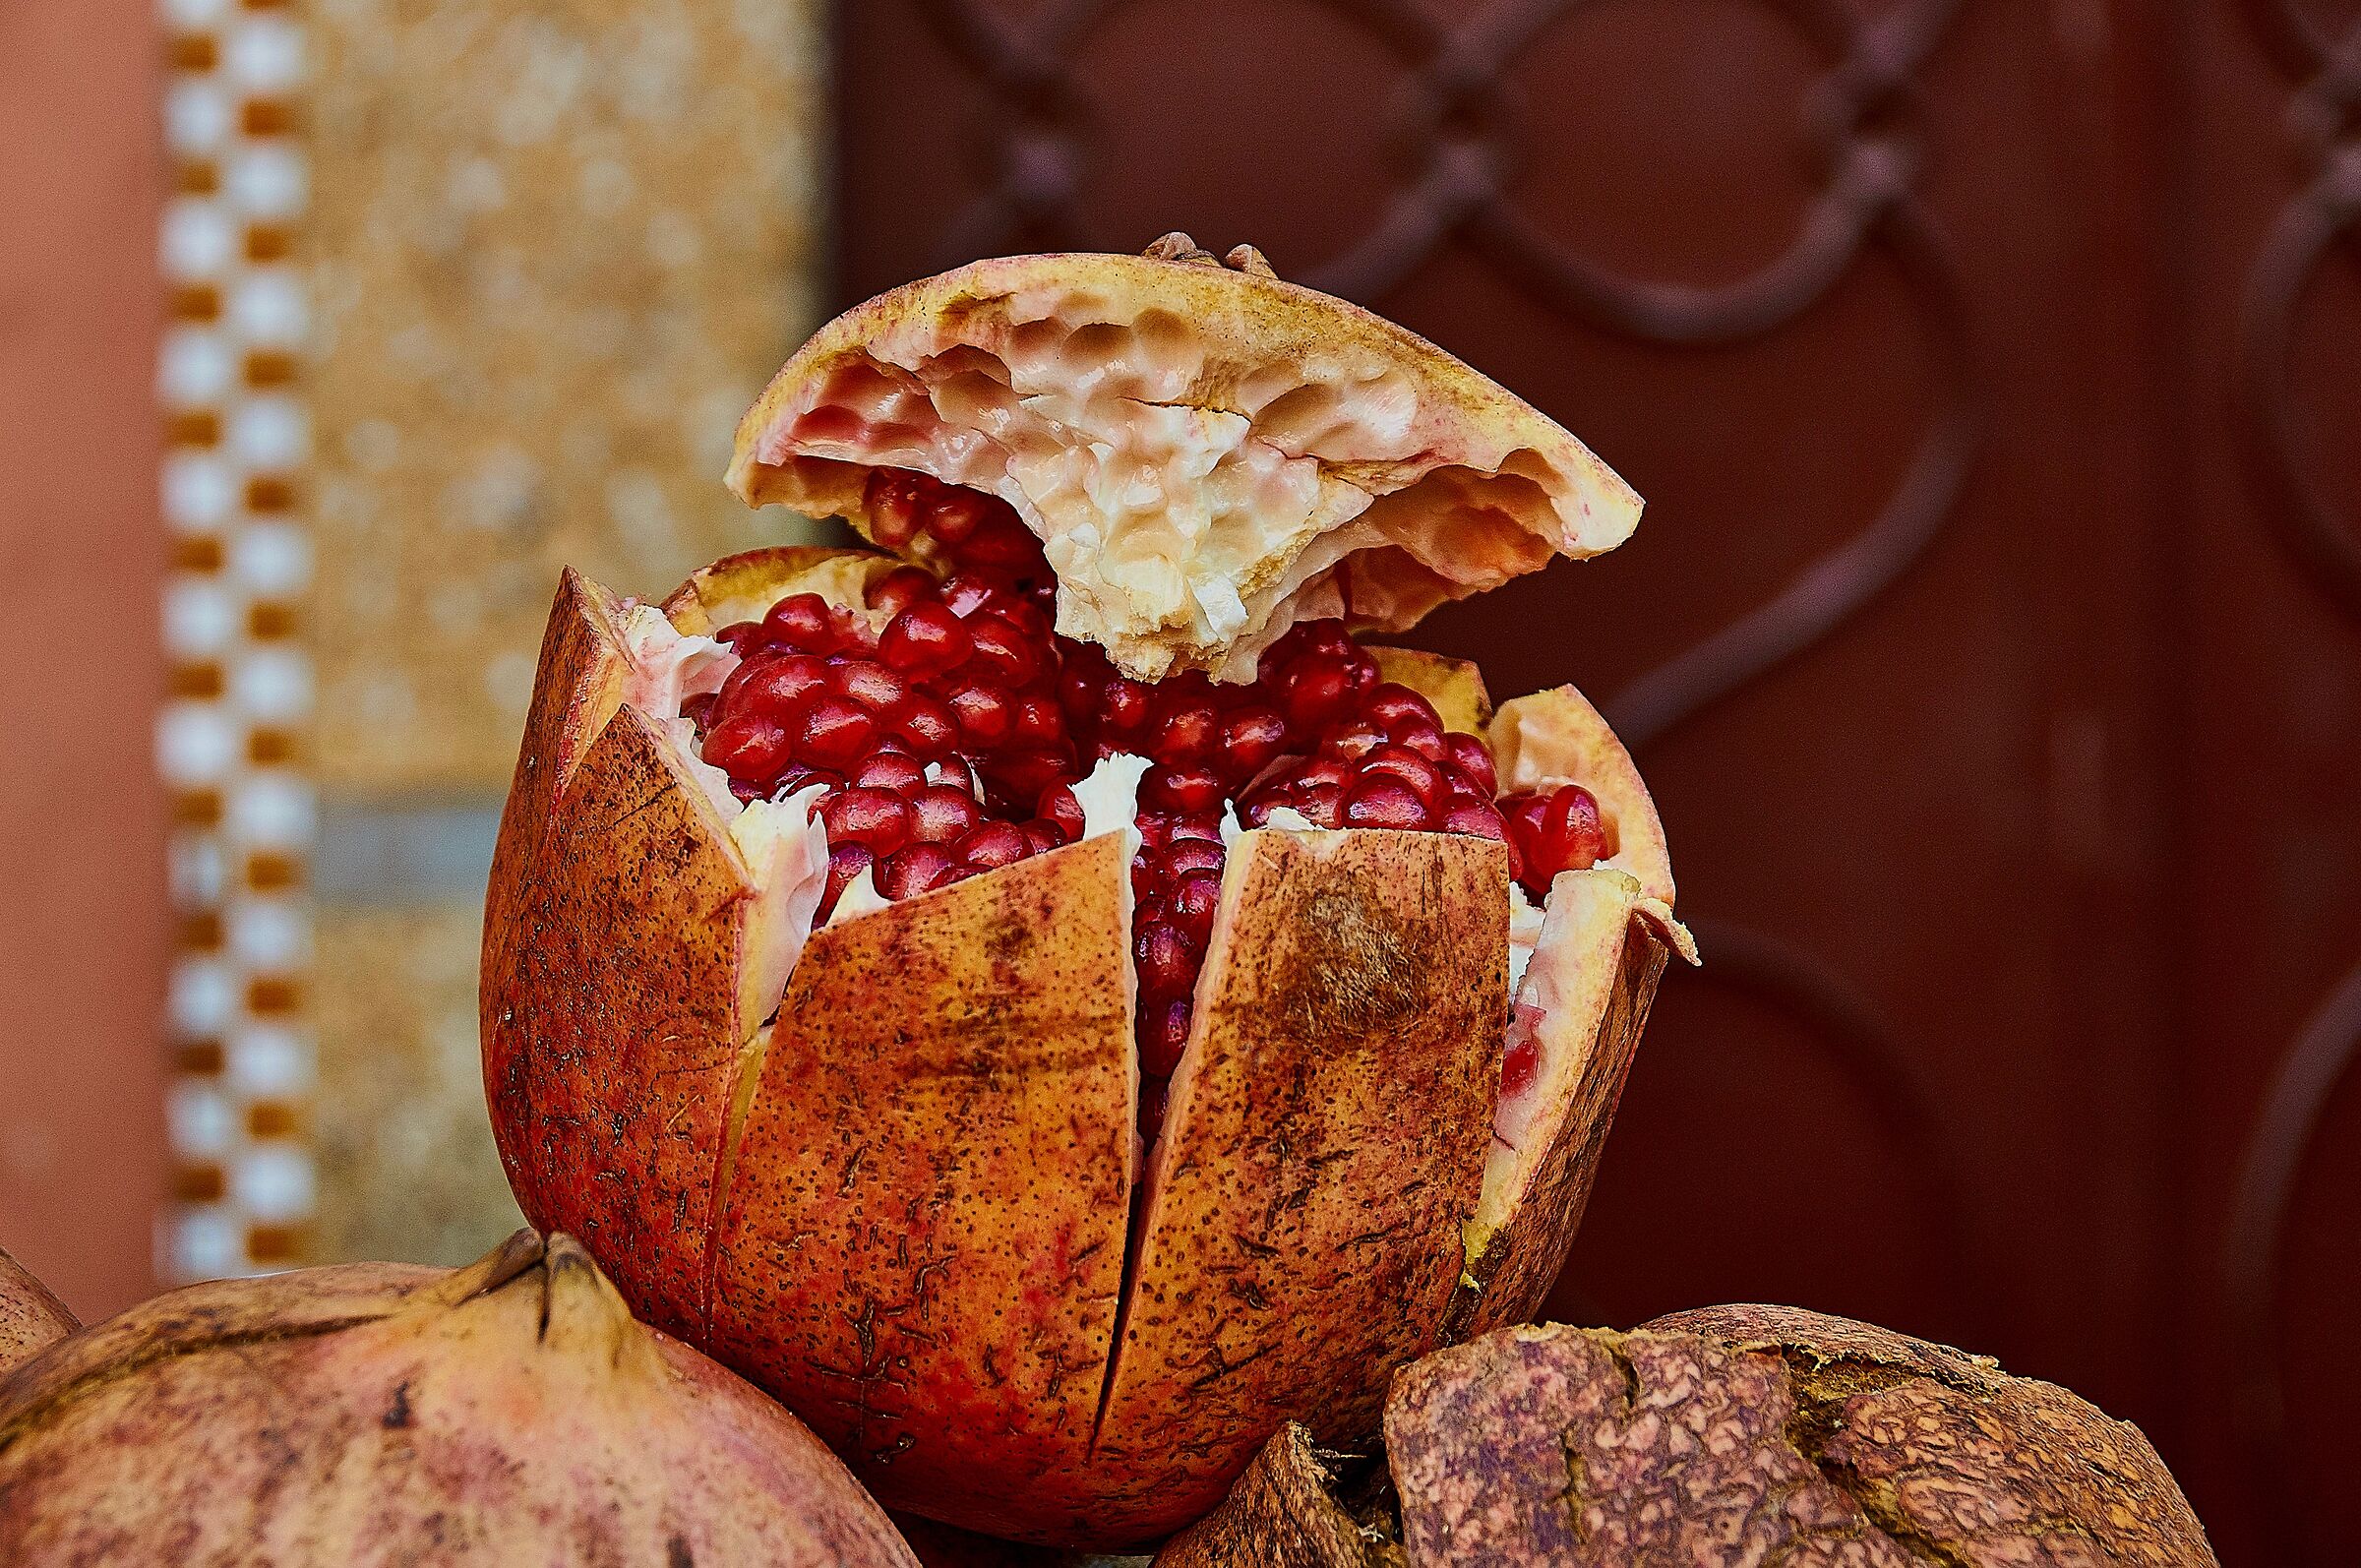 Pomegranate of Morocco...